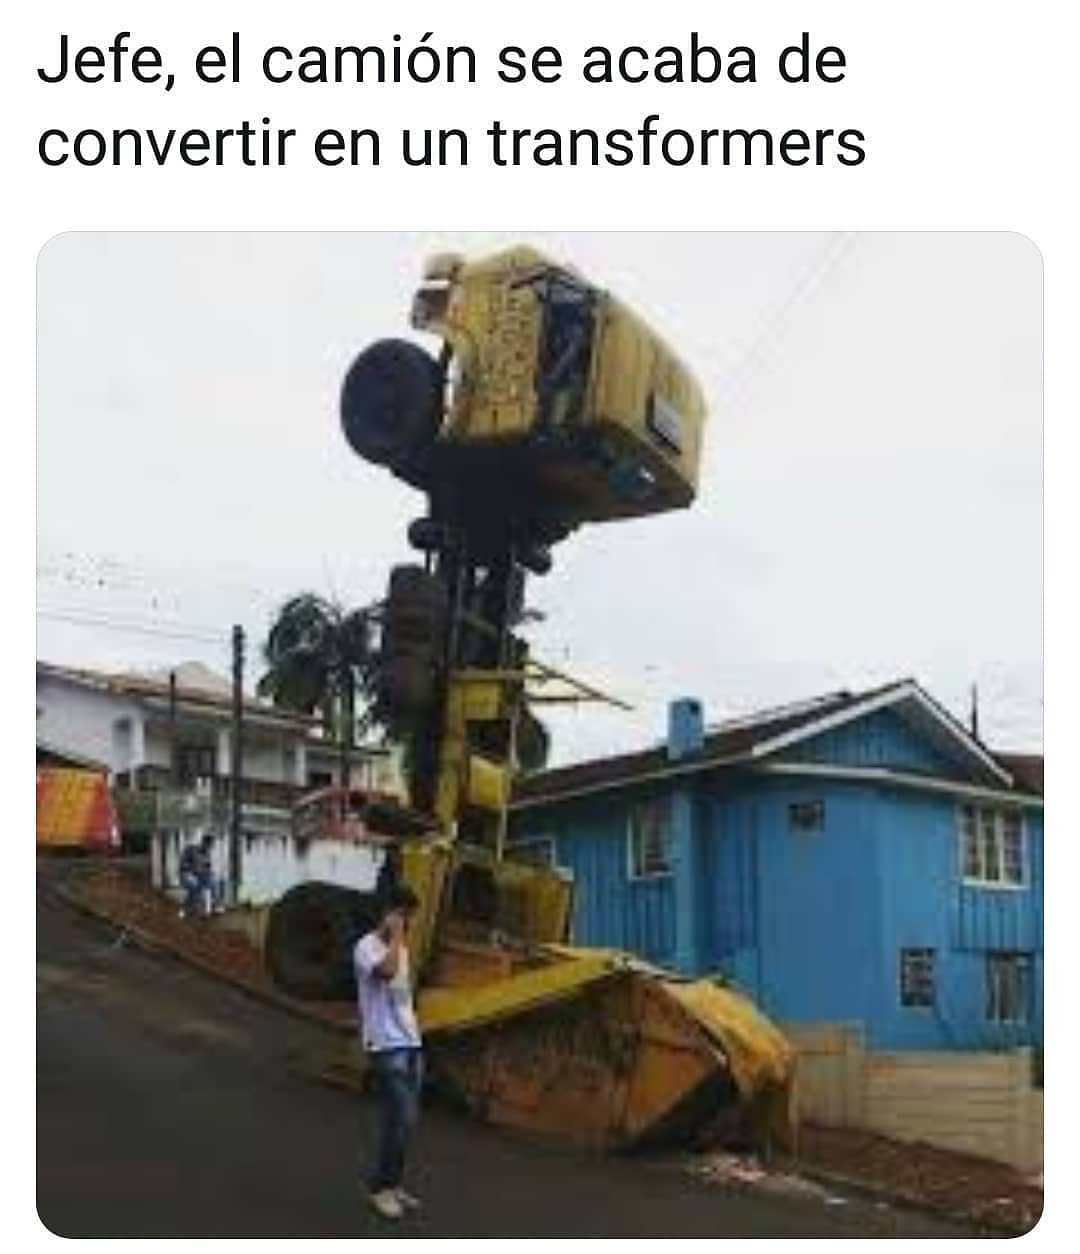 Jefe, el camión se acaba de convertir en un transformers.